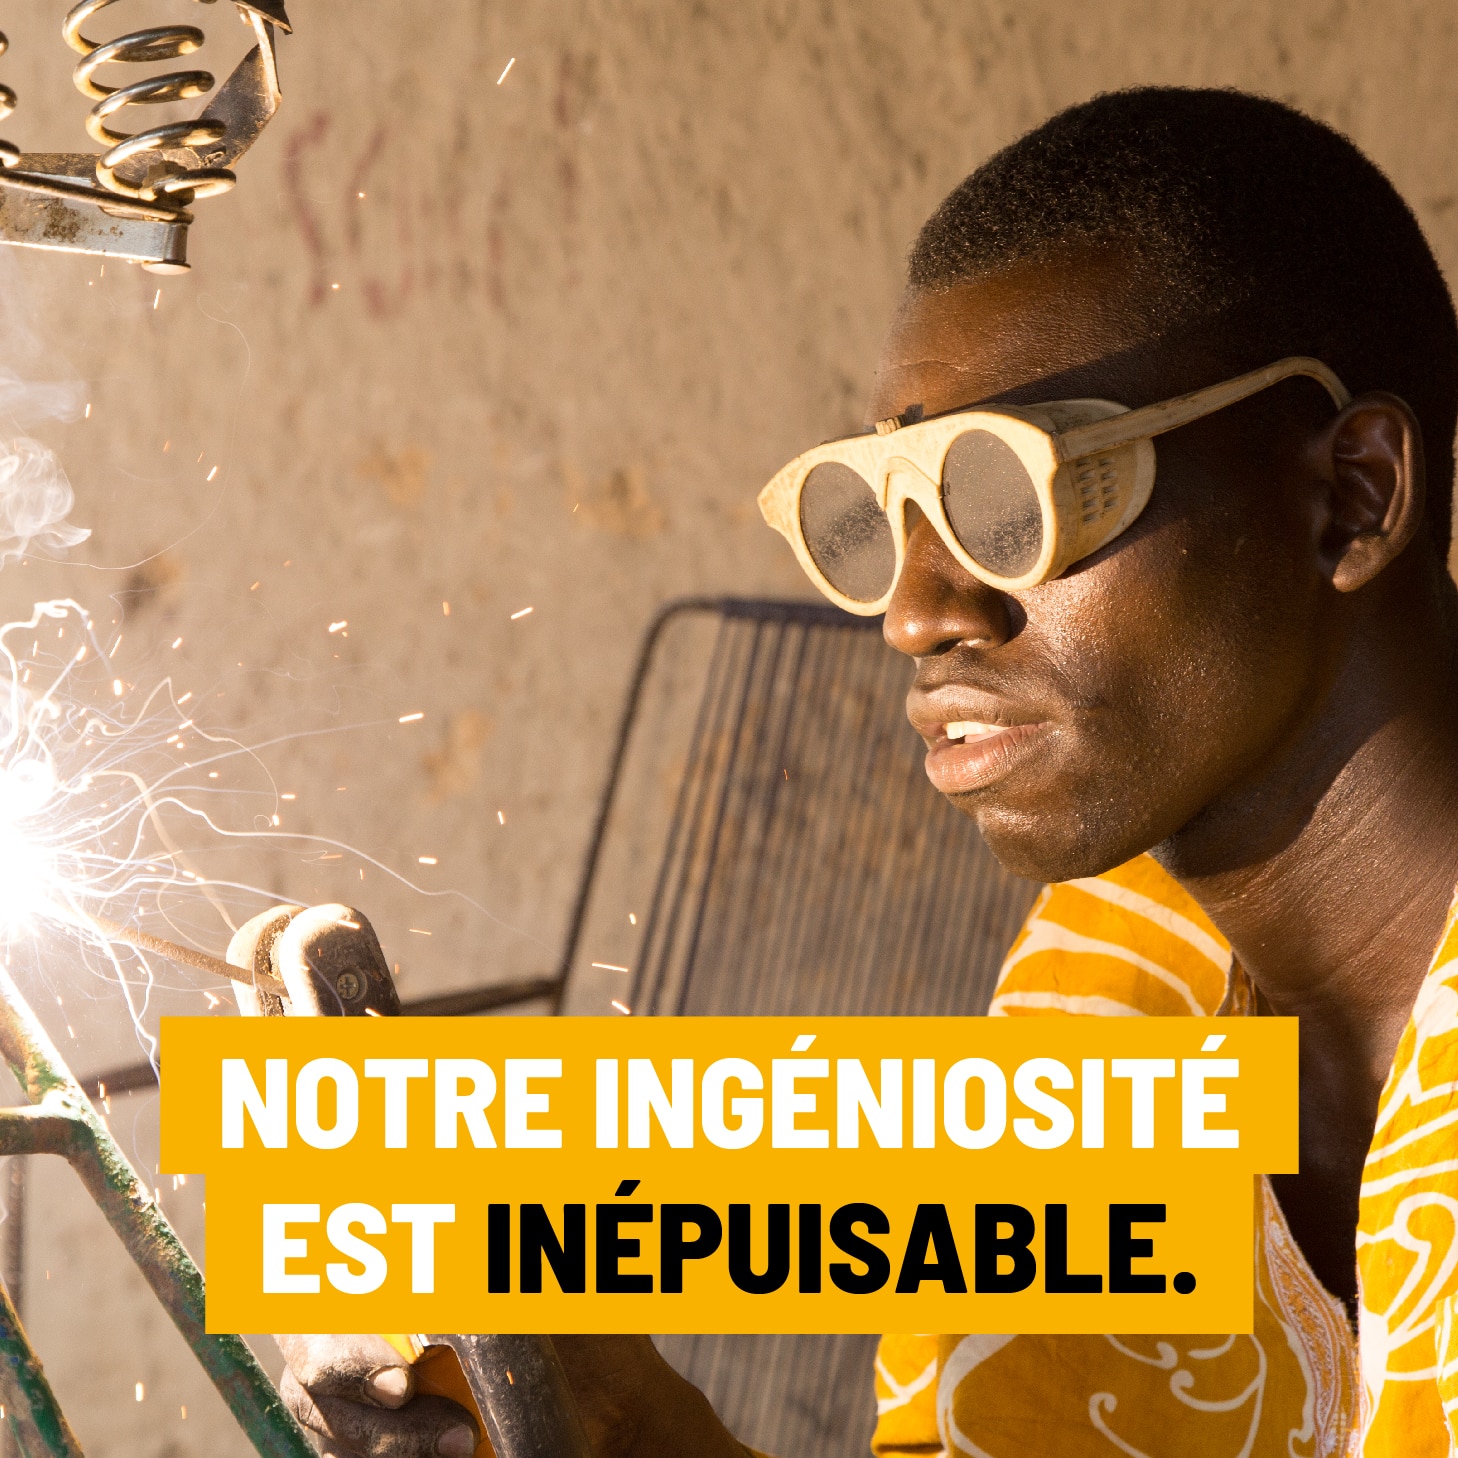 Visuel de campagne de don Geres "notre ingéniosité est inépuisable"